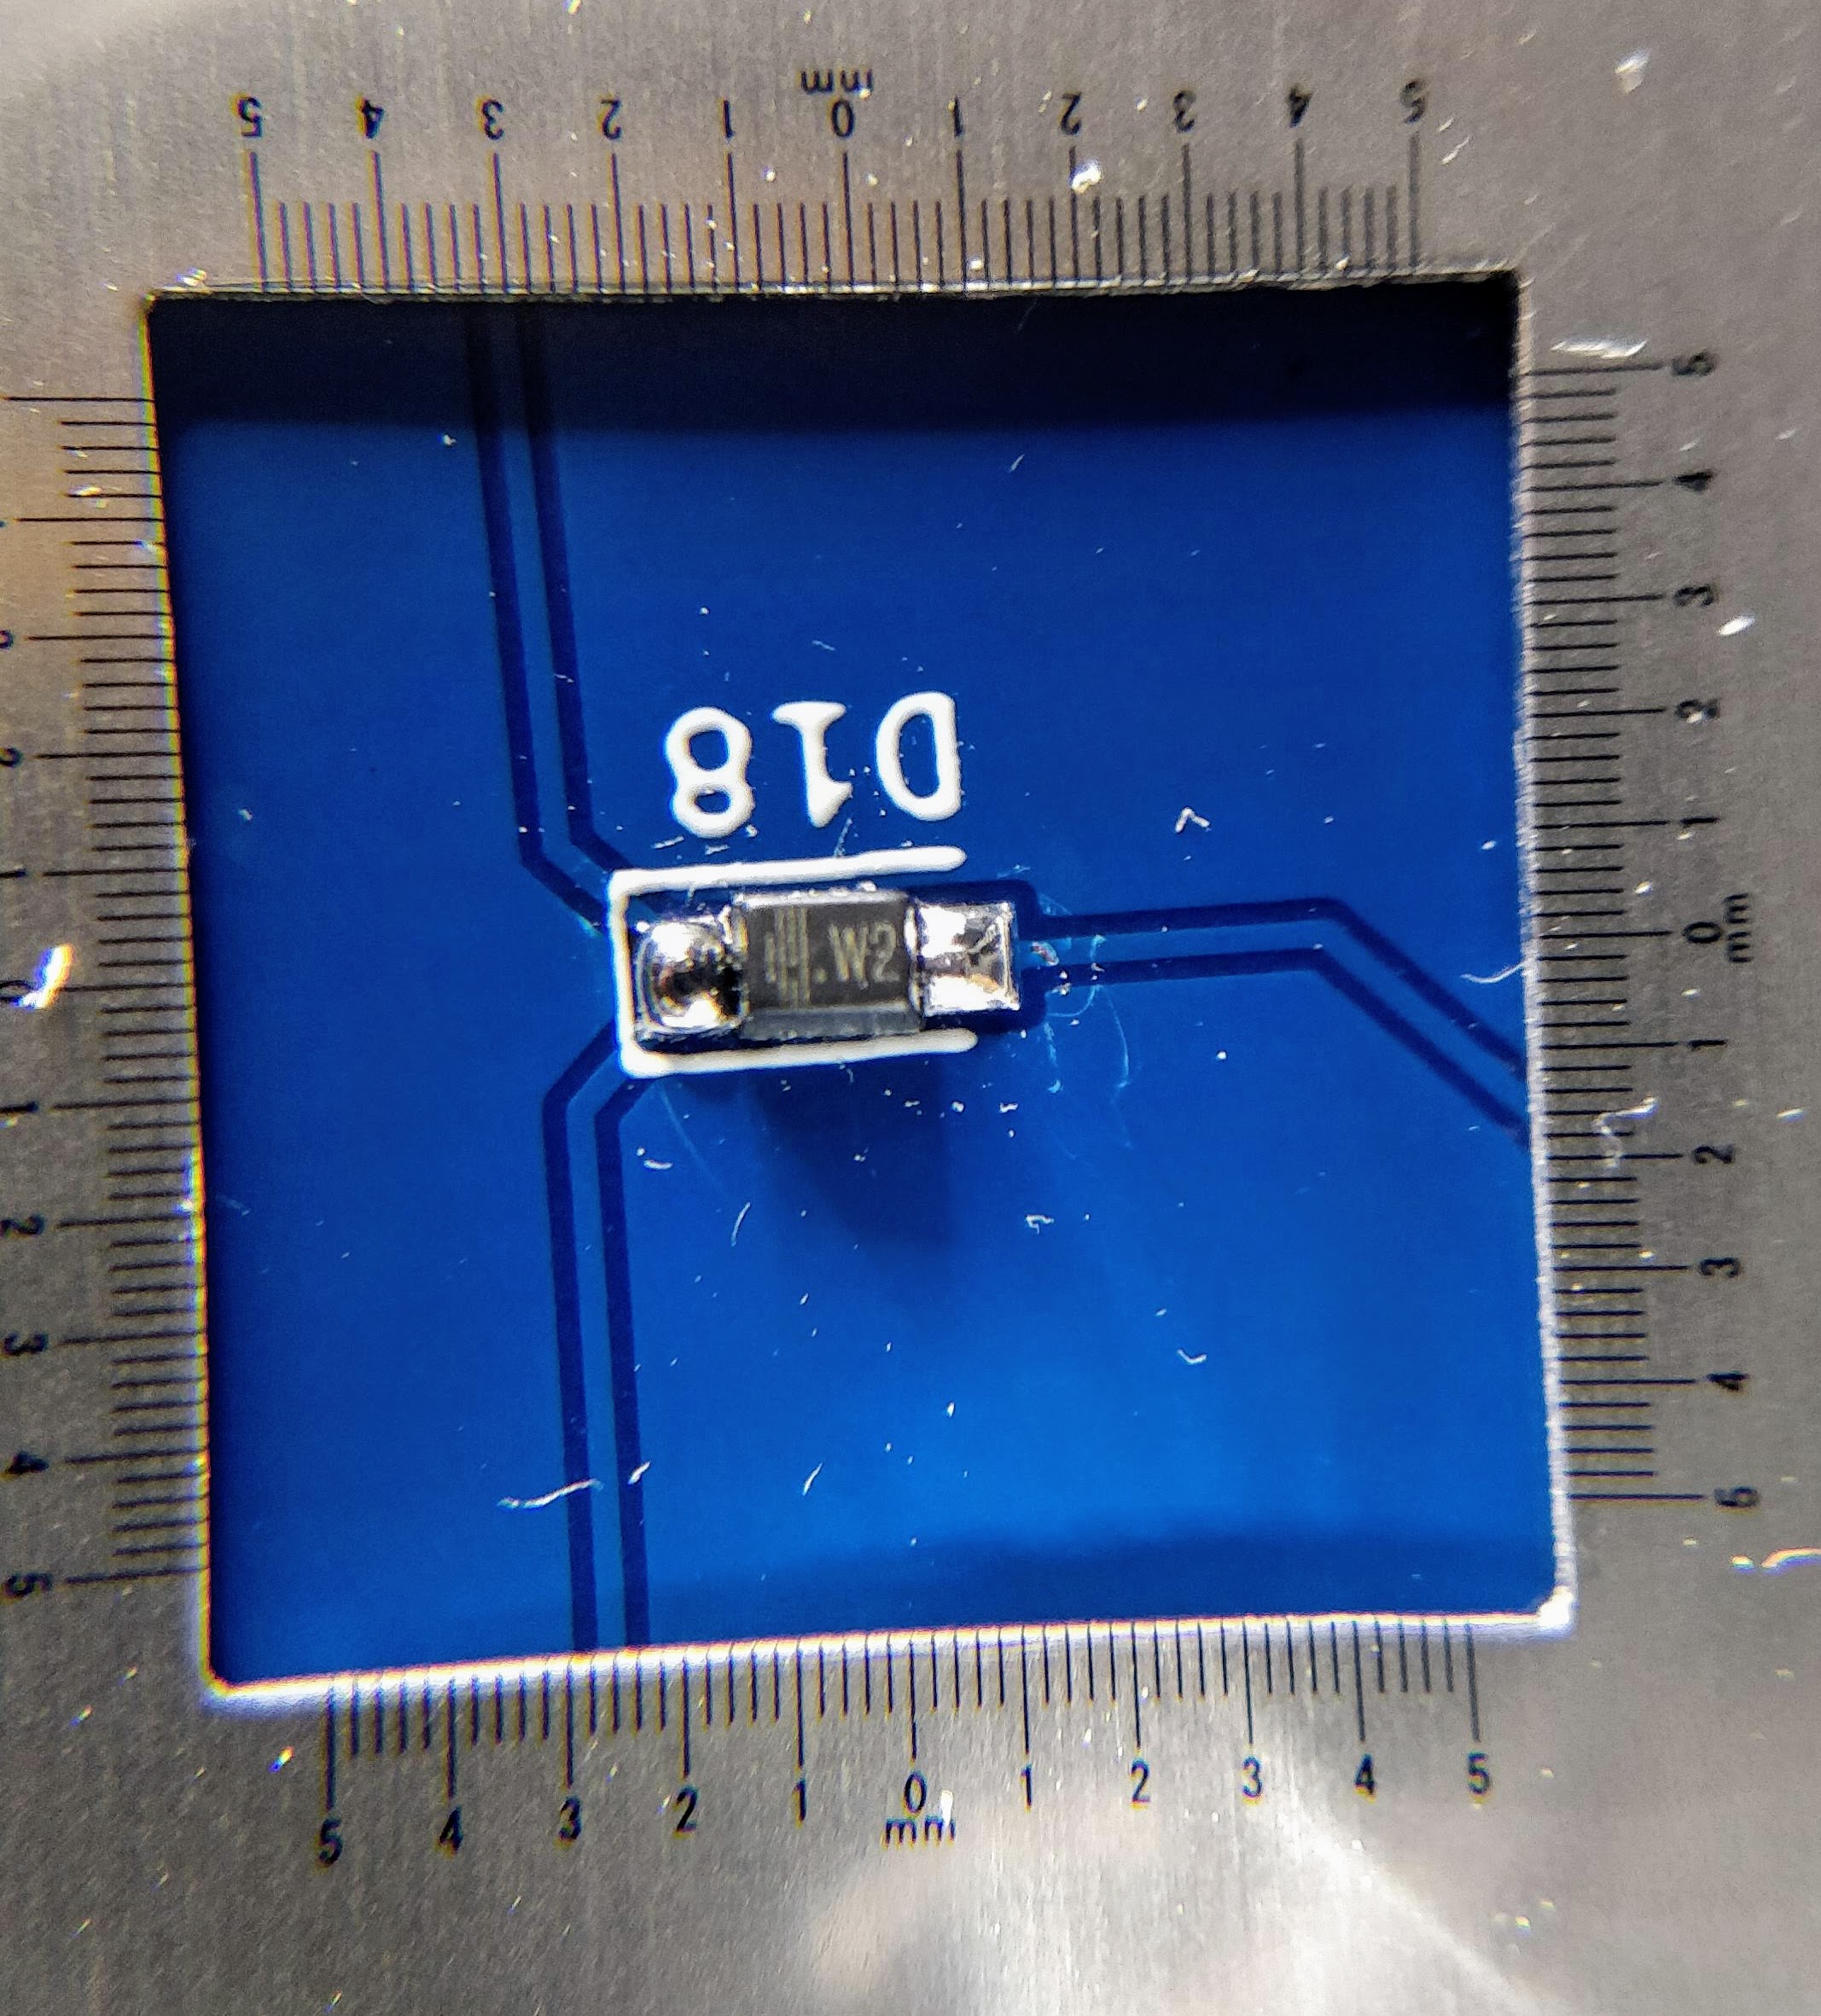 soldered SMD diode